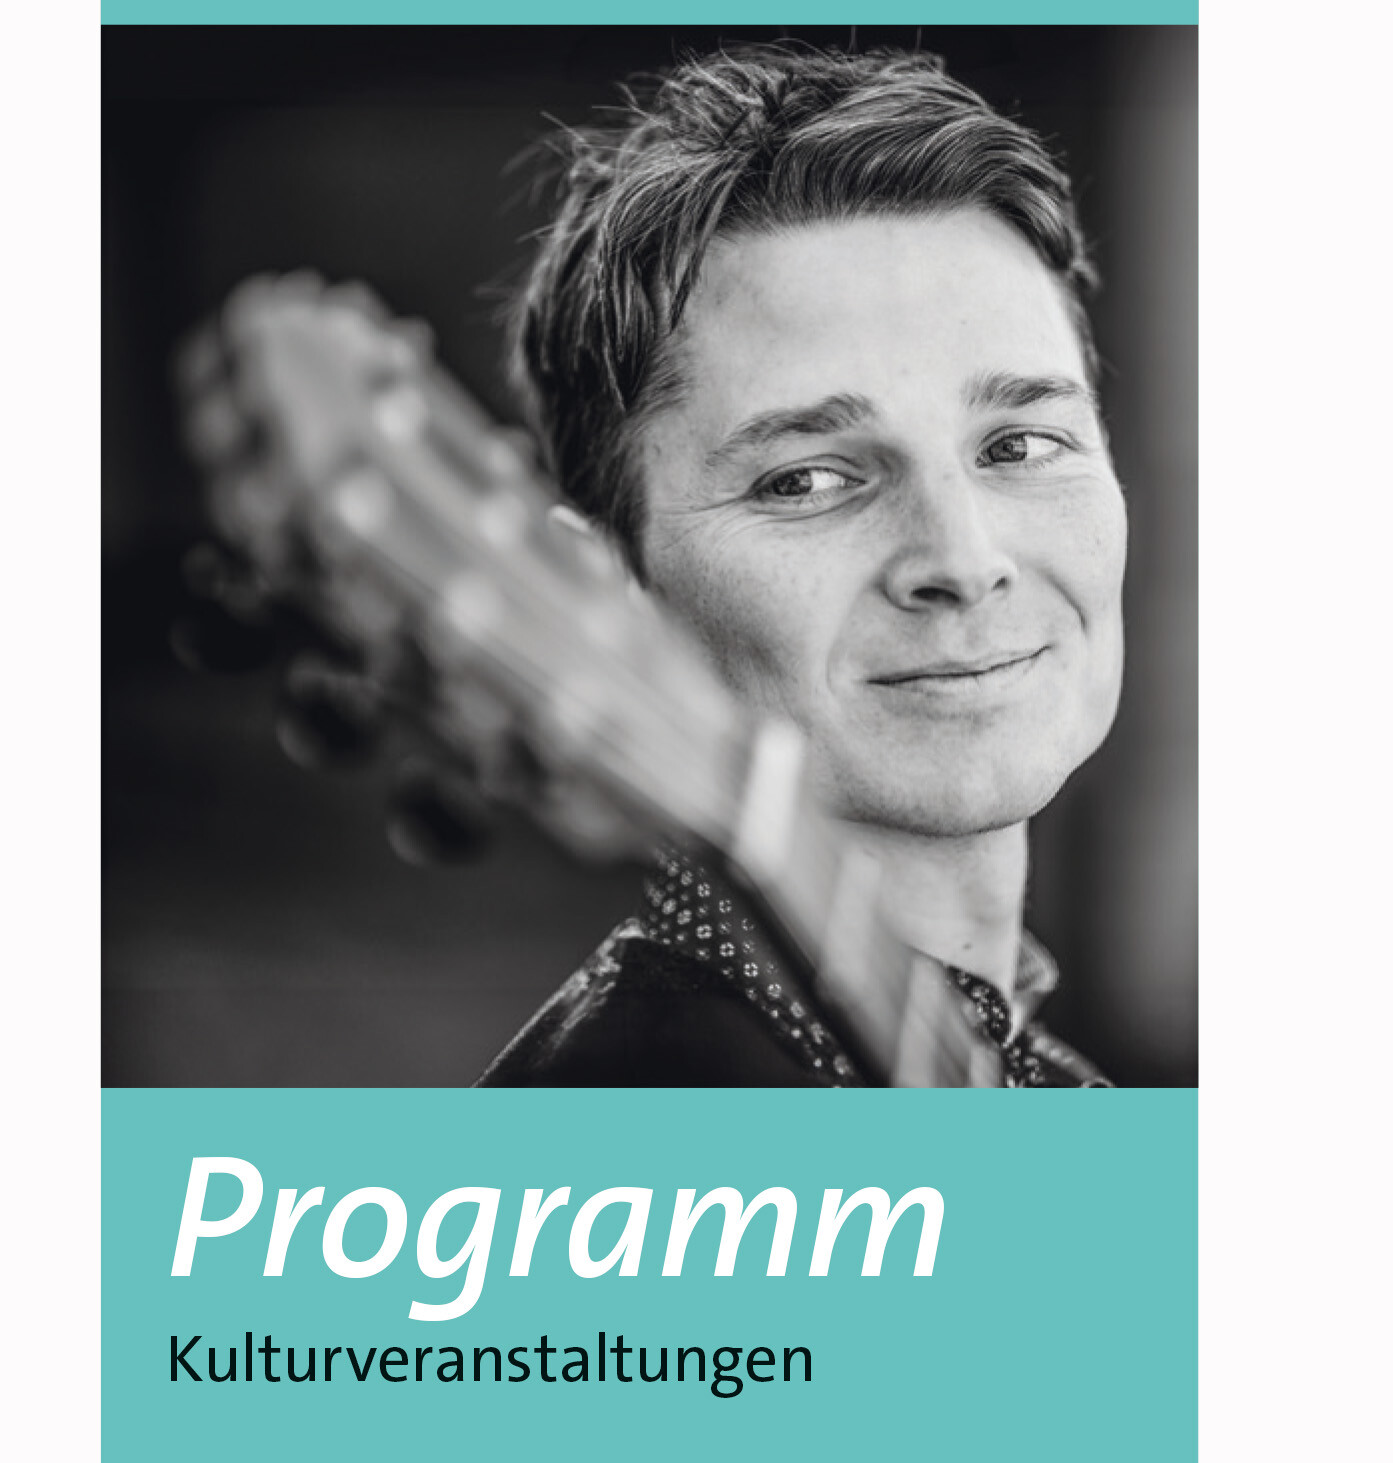 Titelseite des neuen Kulturprogrammes mit einem Bild von Markus Lohmeier (Gitarrist) am 24.6., 19 Uhr, St. Walburg